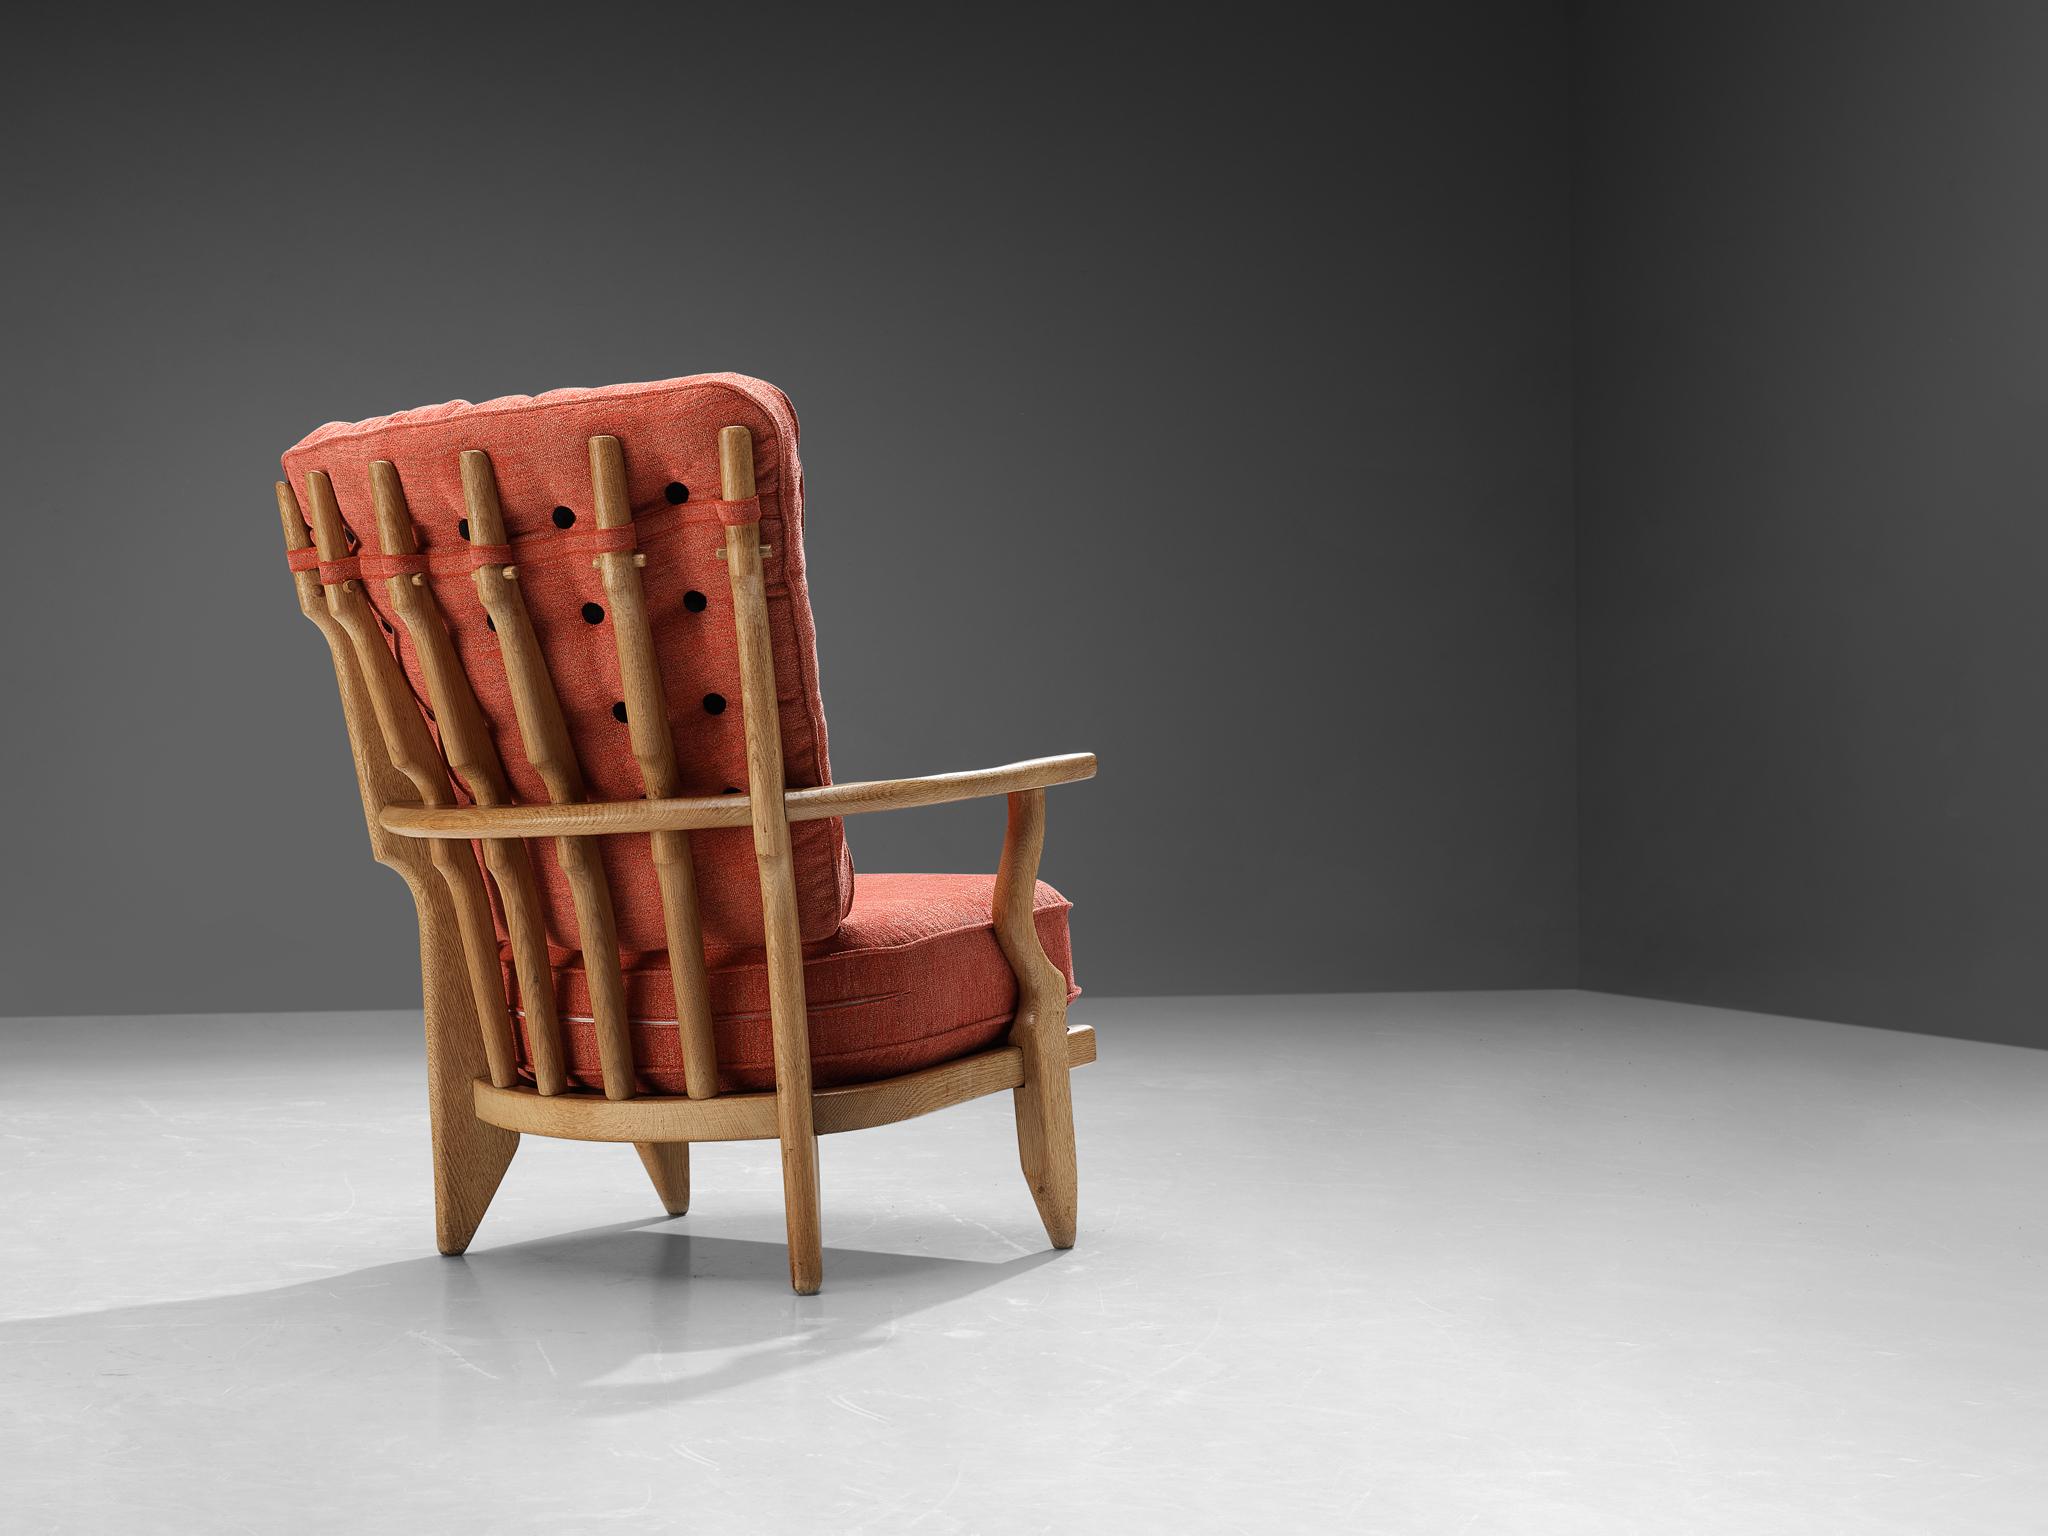 Guillerme et Chambron pour Votre Maison, chaise longue modèle 'Mid-Repos', chêne, tissu, France, années 1960.

Chaise de salon 'Mid Repos' de Guillerme et Chambron en chêne massif, bien sculptée, avec les détails décoratifs caractéristiques au dos